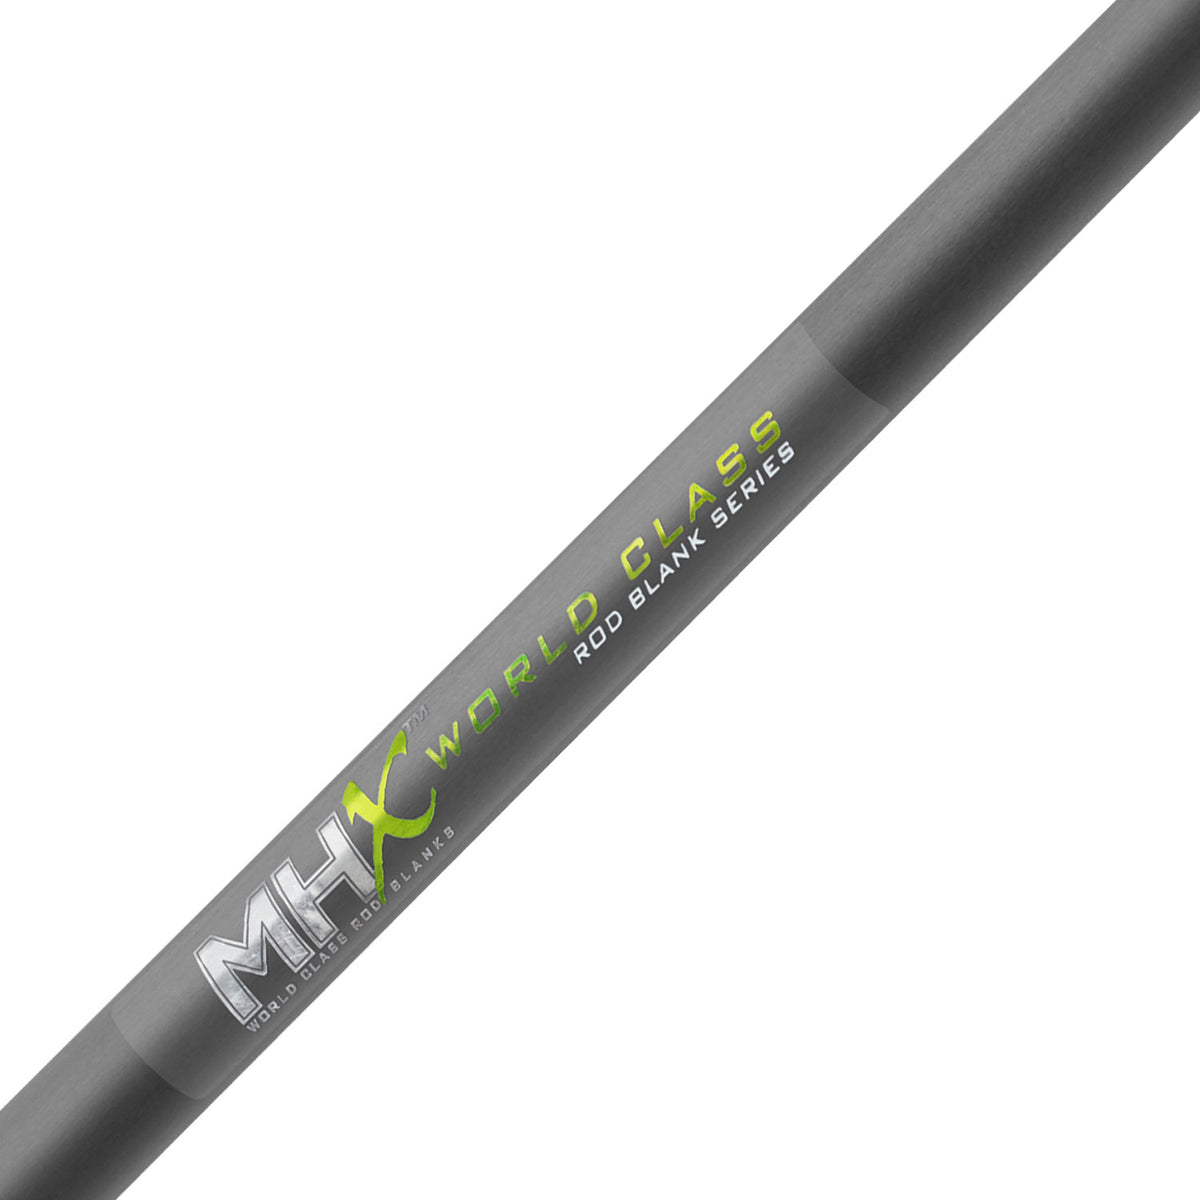 MHX 32 Ultralight Quiverstick Ice Rod Blank - CIB-32UL-MHX